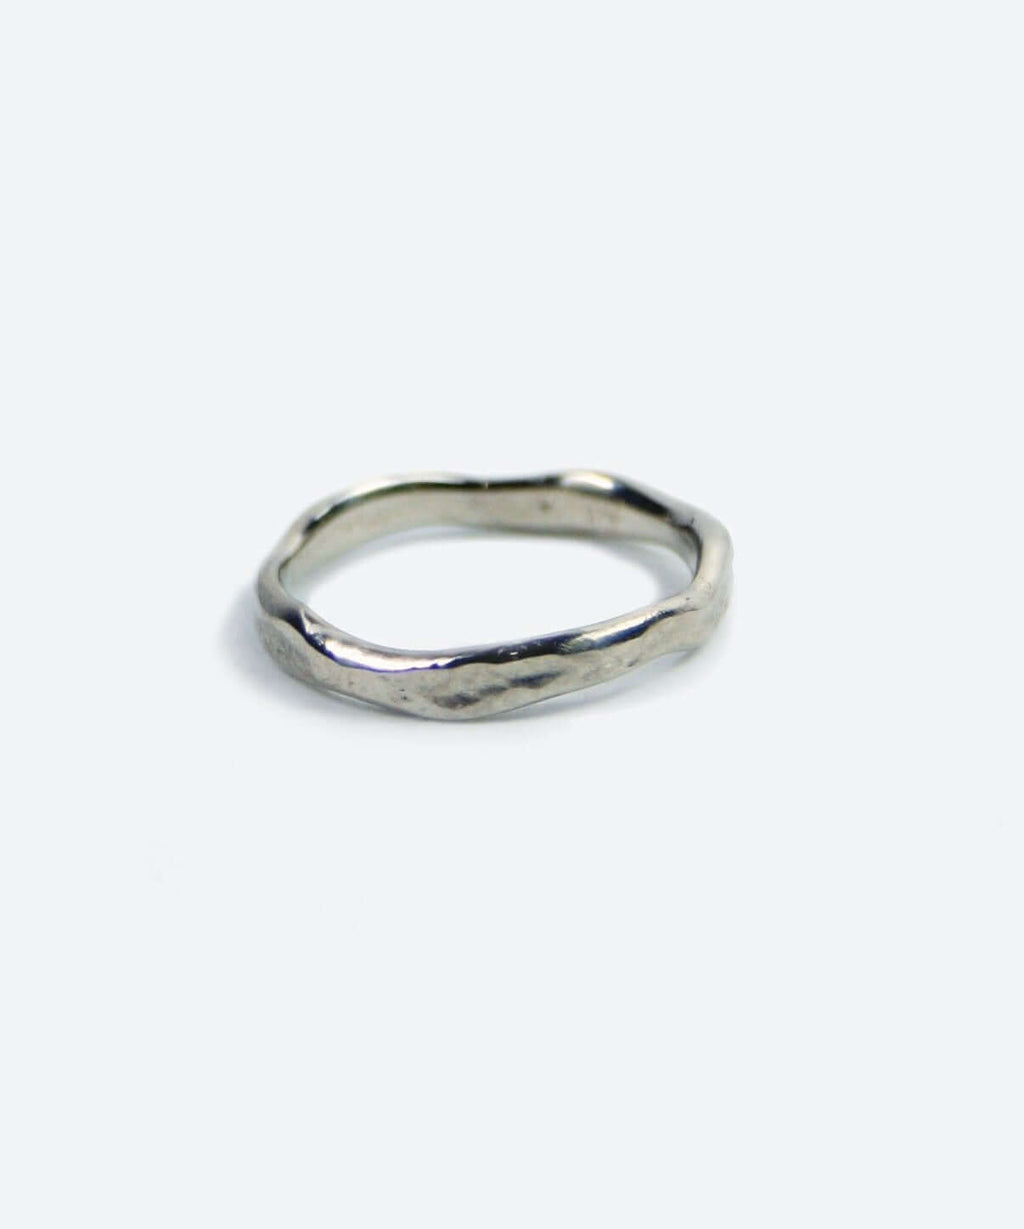 Unisex wedding ring by Macha Studio Brooklyn NY